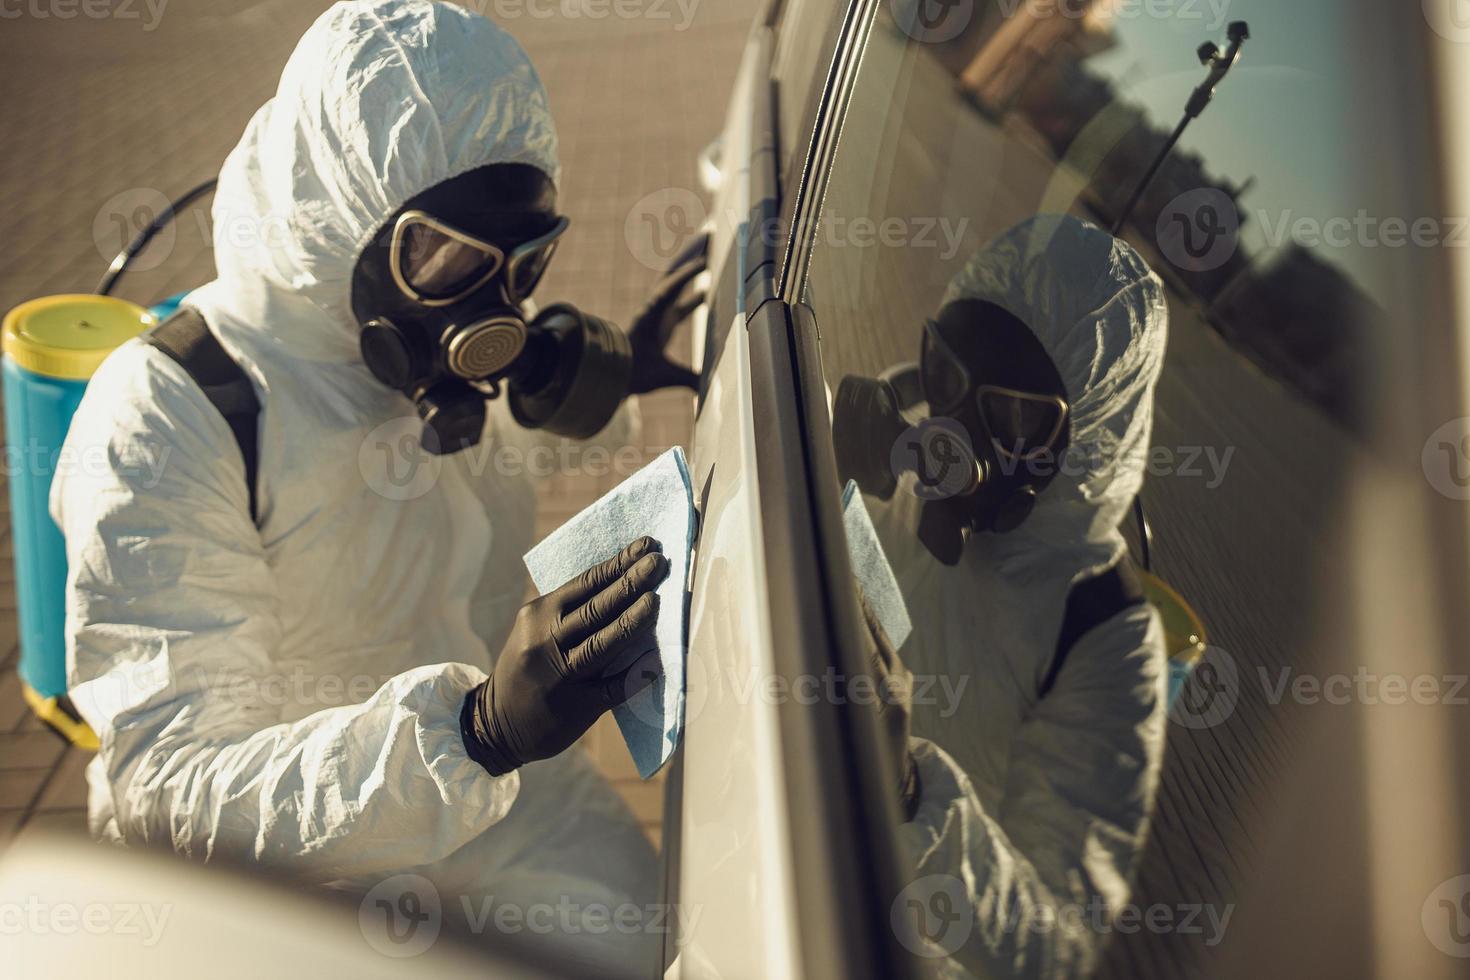 limpieza y desinfección de vehículos en medio de la epidemia de coronavirus limpieza y desinfección de automóviles prevención y control de infecciones de traje y máscara de protección epidémica foto